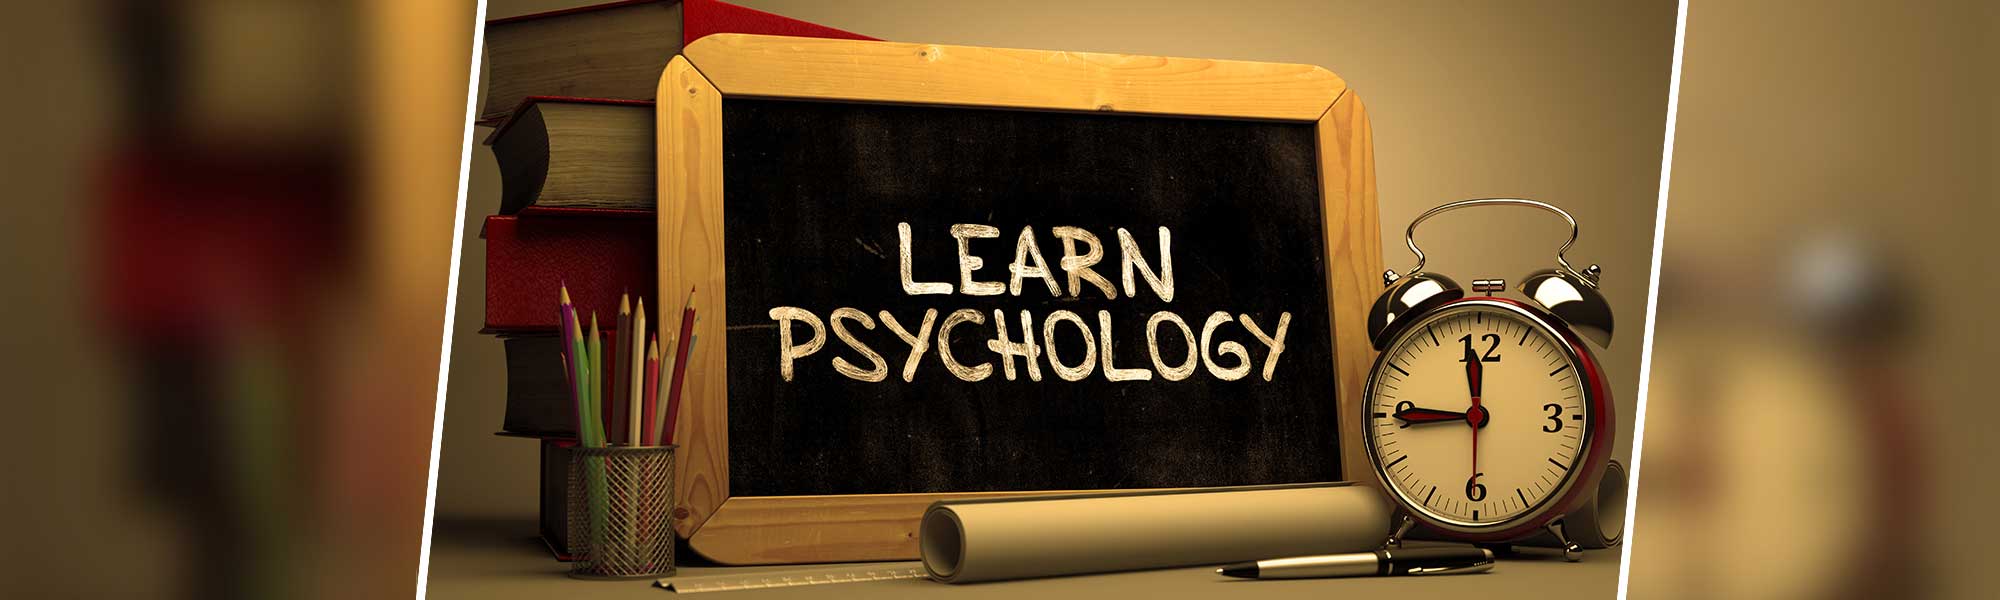 Learn Psychology written on a blackboard